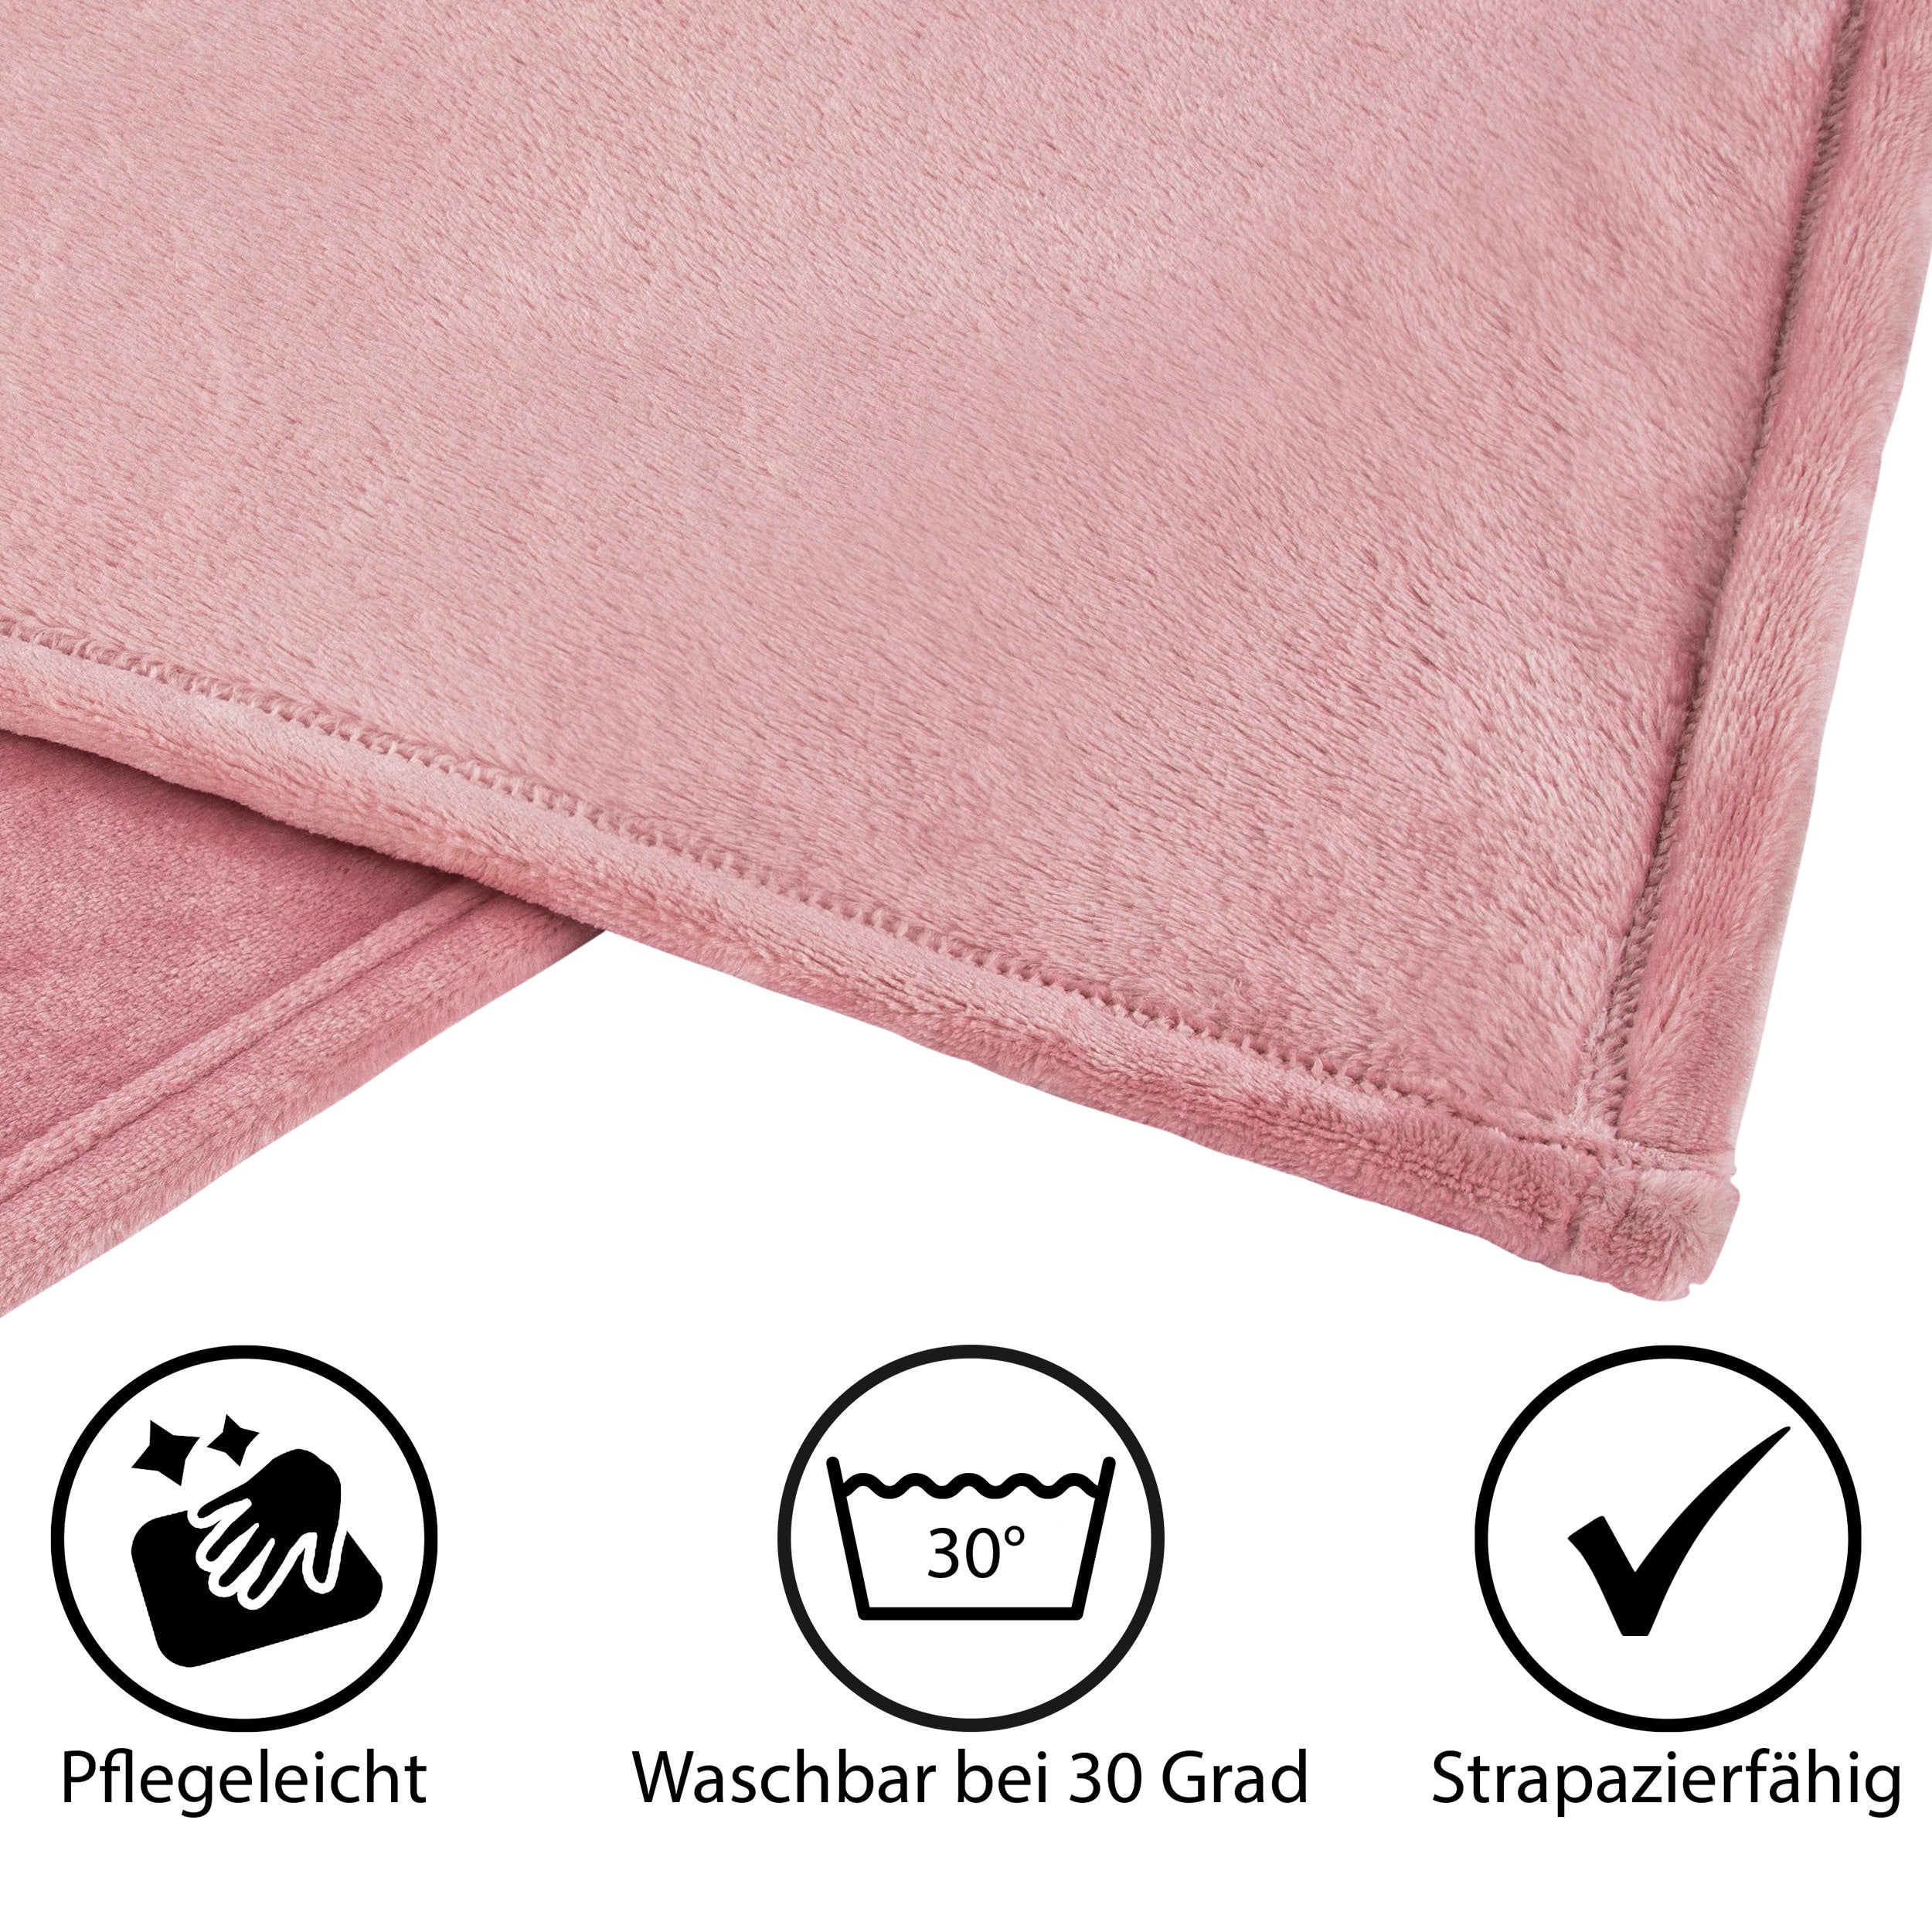 99028 Hometex Premium Textiles Cashmere Touch Kuscheldecke | Hochflor-Flausch Sofadecke | Kuschelig weich & hautsympatisch | 150 x 200 cm Altrosa